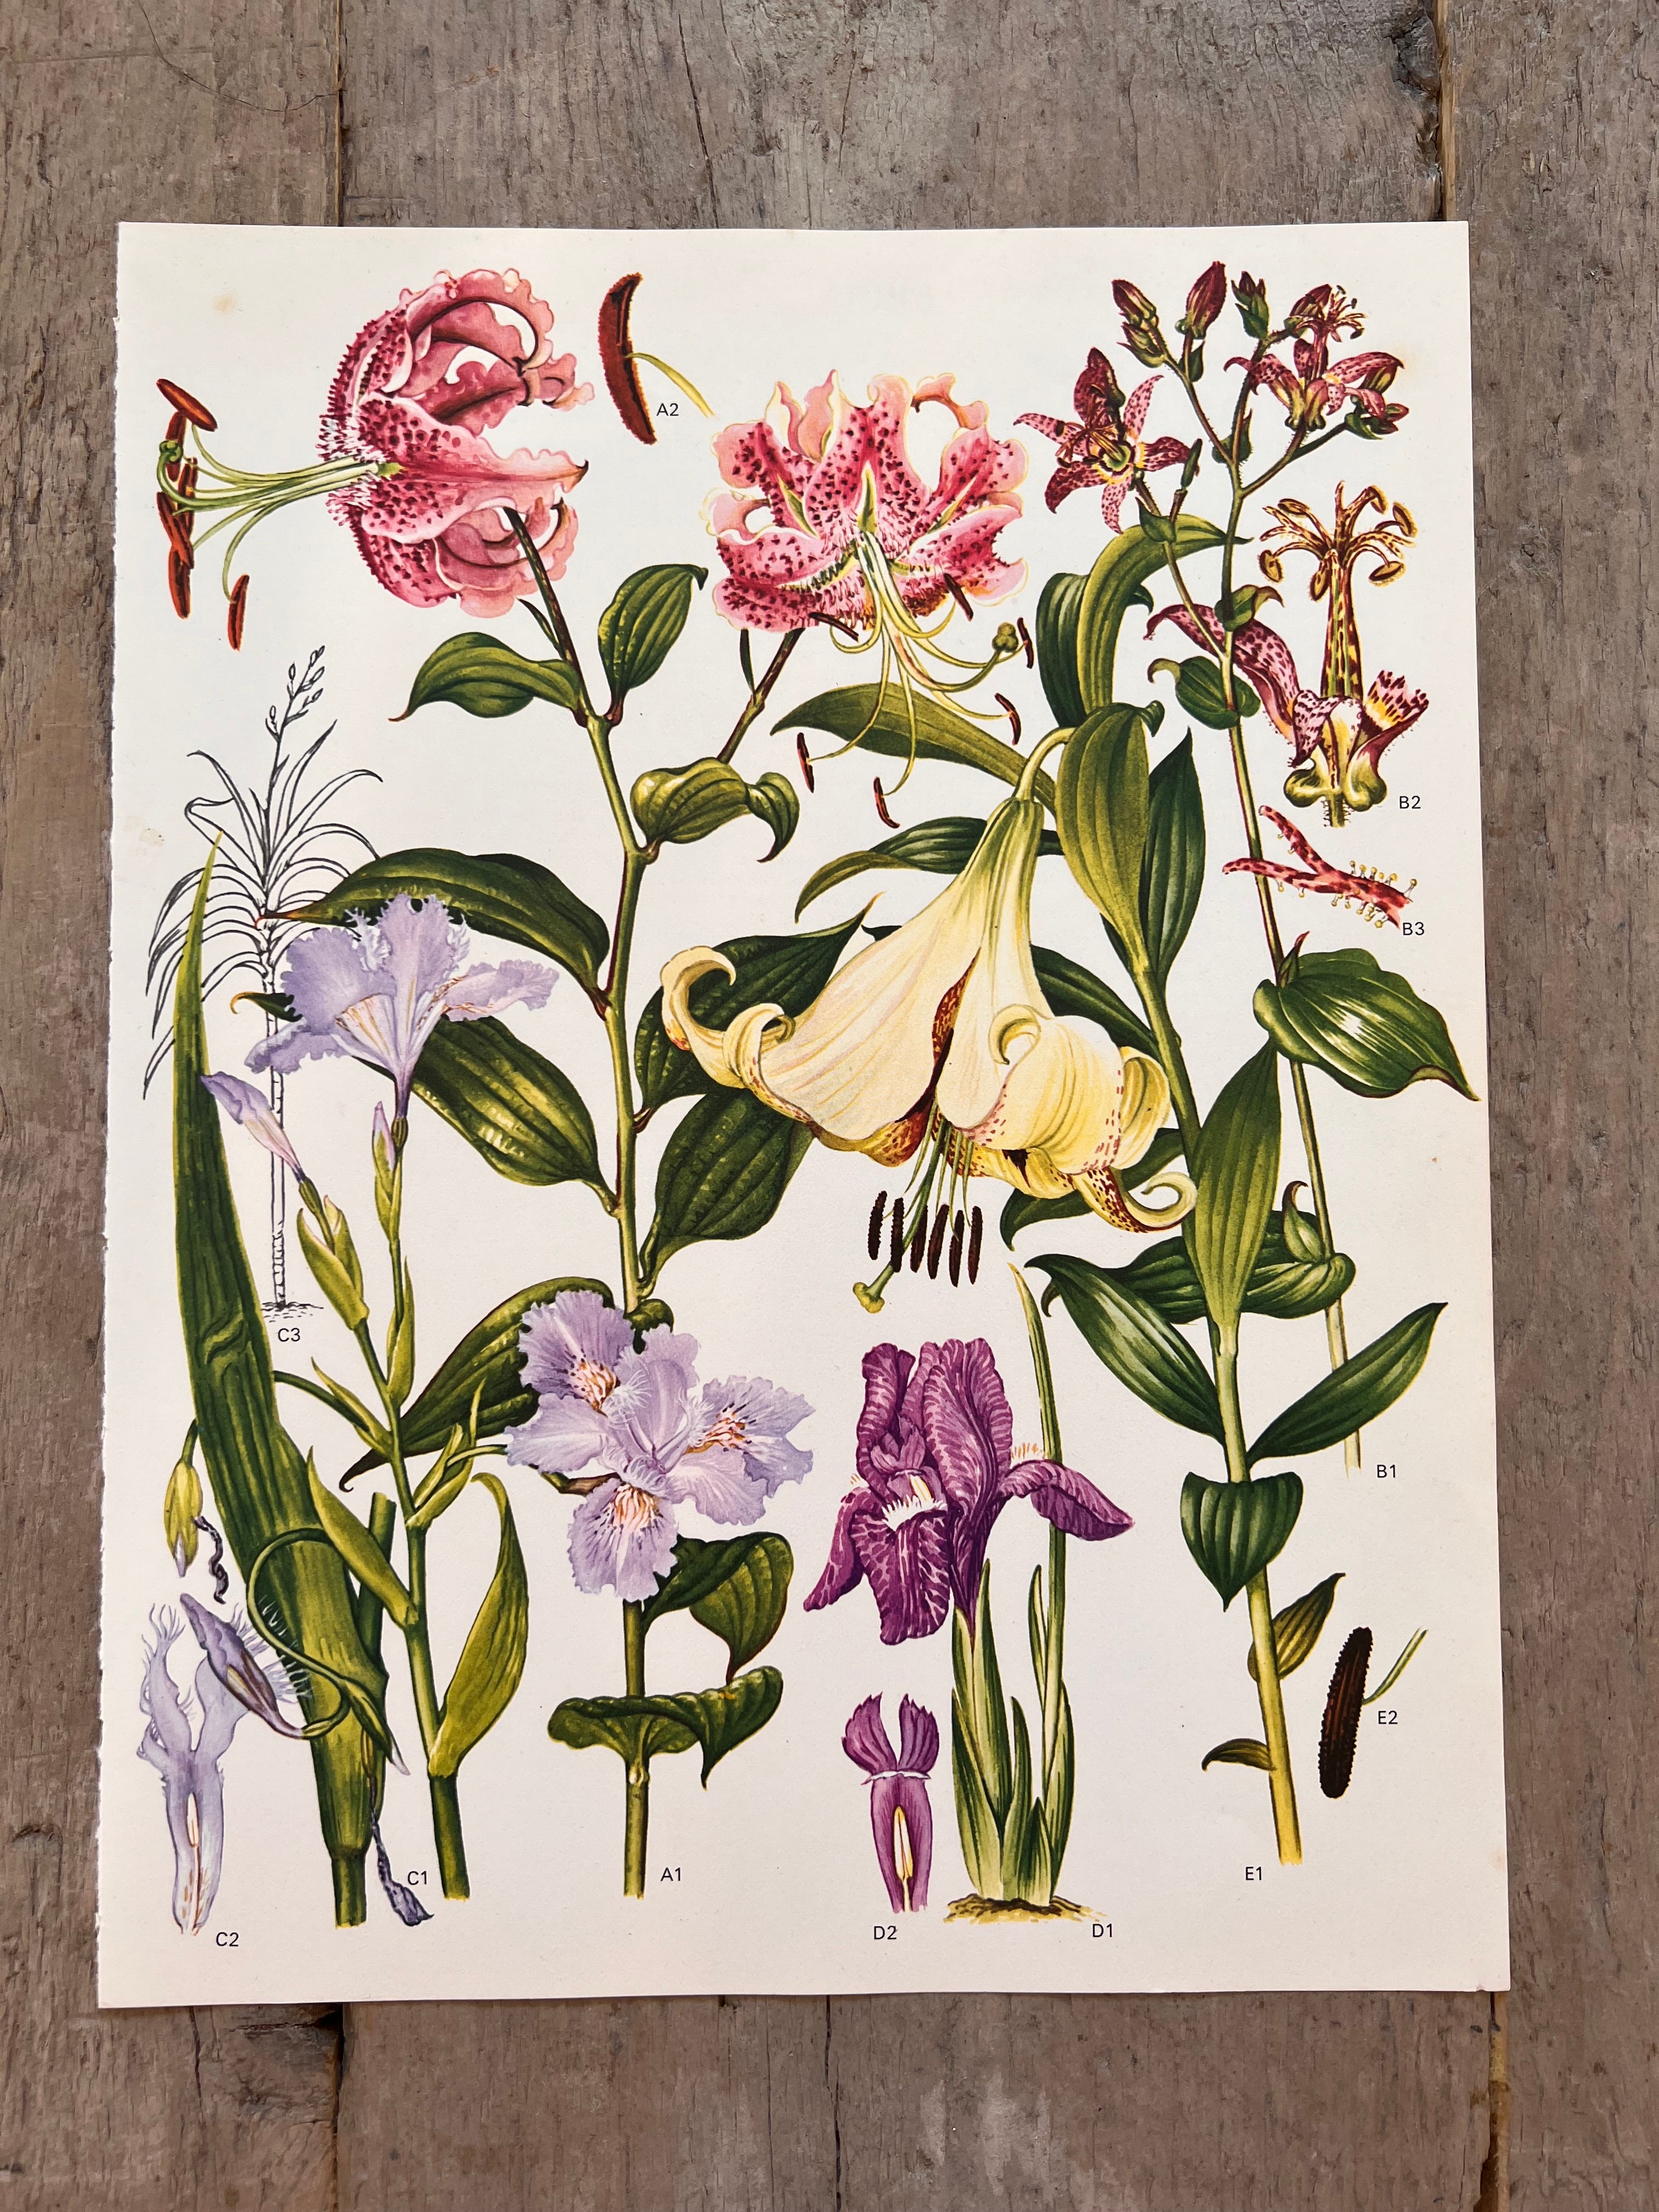 Botanische illustratie van de roze lelie jaren 70